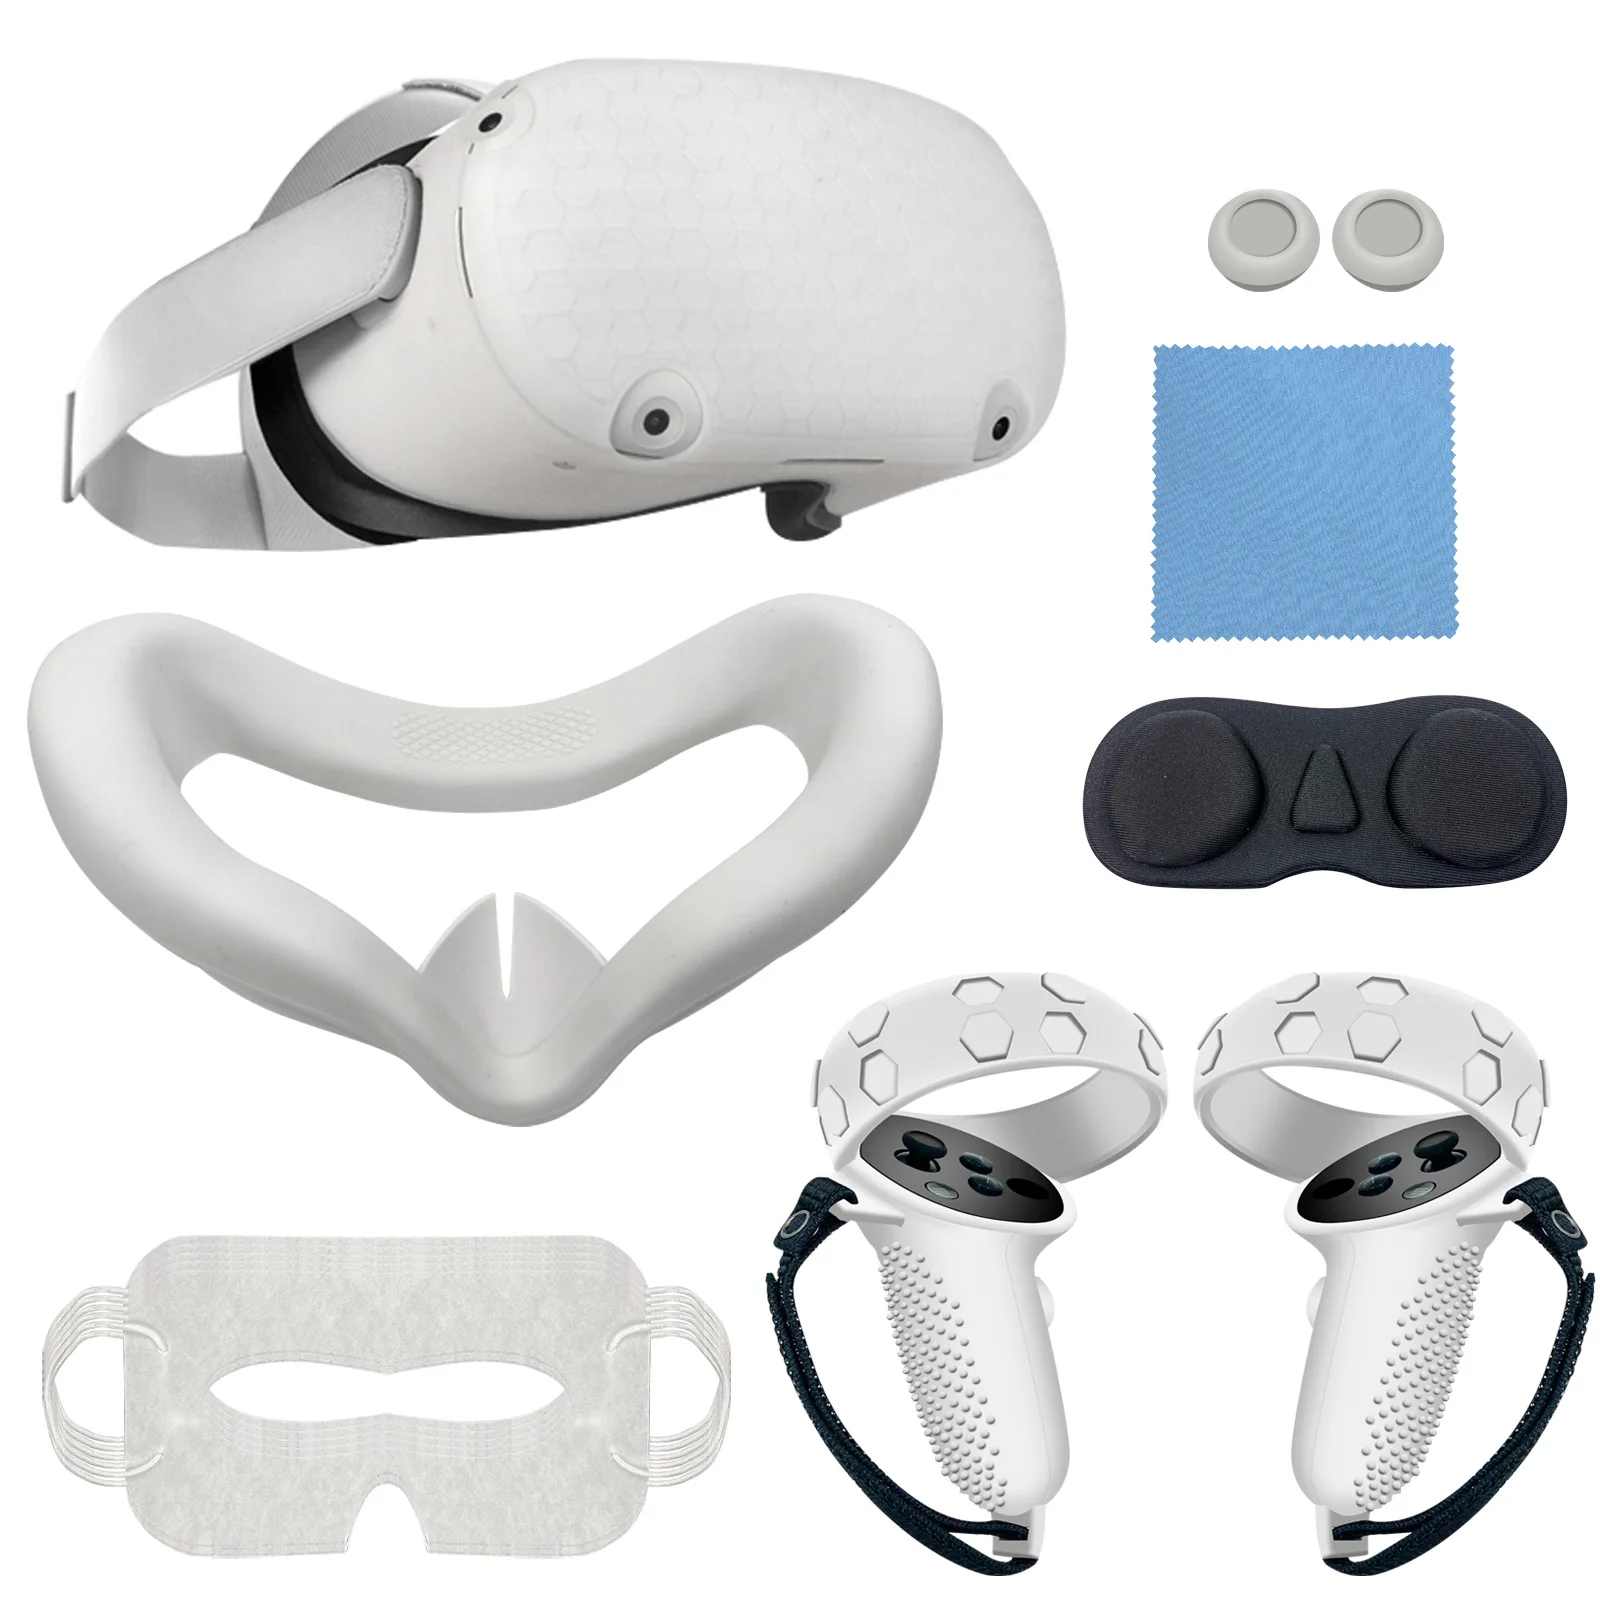 

7 шт. передняя крышка VR, силиконовая маска с защитой объектива, кожаный чехол с сенсорным контроллером для Oculus Quest 2, аксессуары